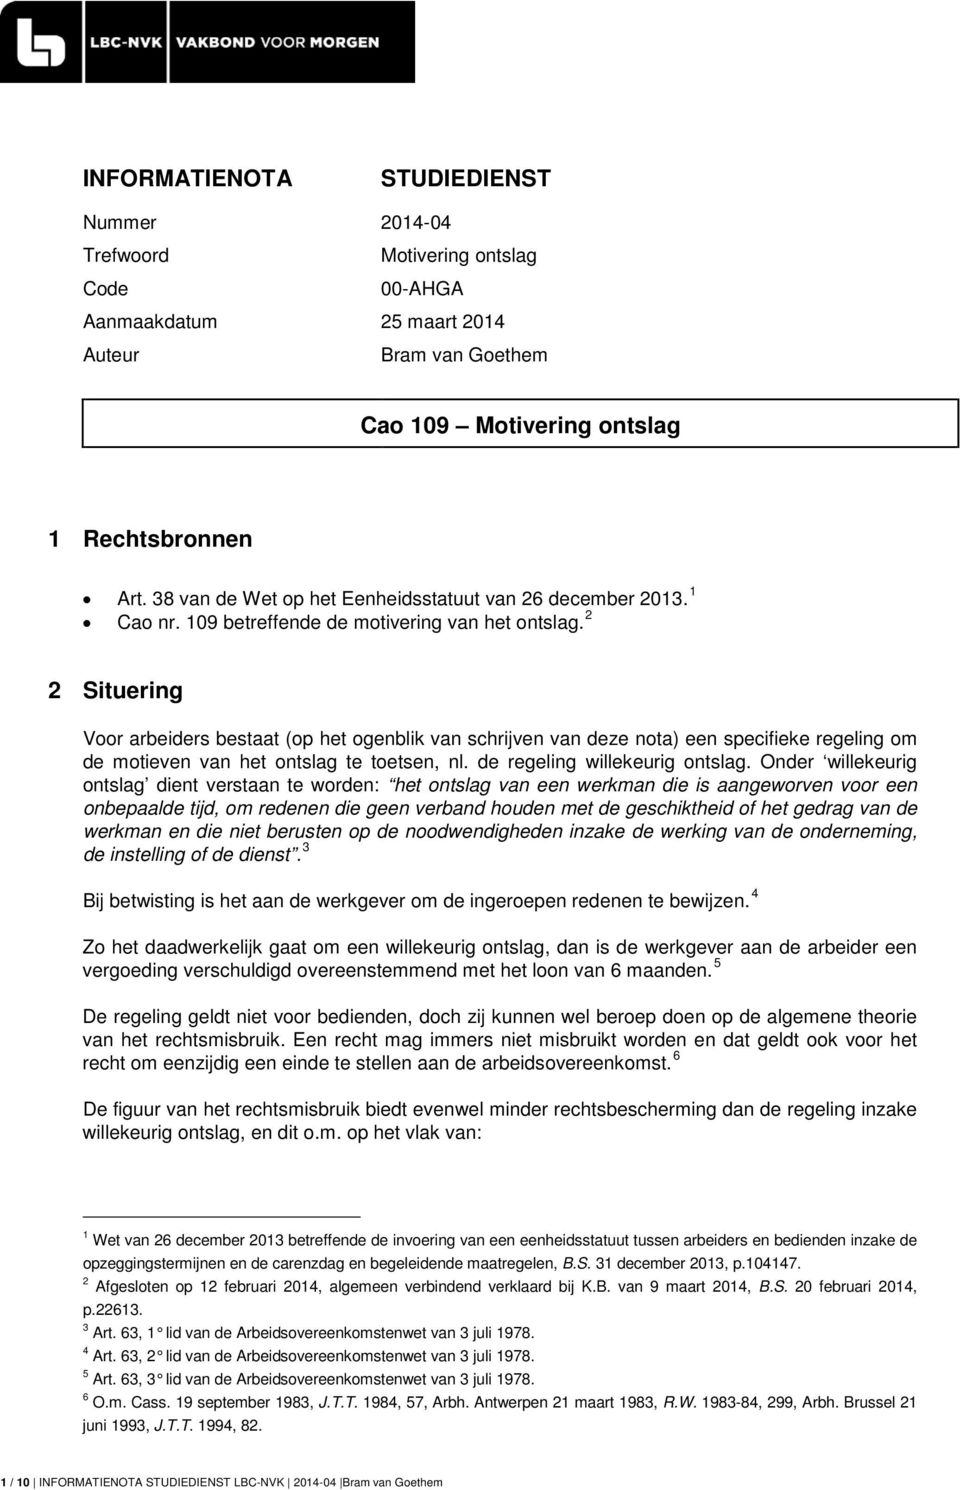 2 2 Situering Voor arbeiders bestaat (op het ogenblik van schrijven van deze nota) een specifieke regeling om de motieven van het ontslag te toetsen, nl. de regeling willekeurig ontslag.